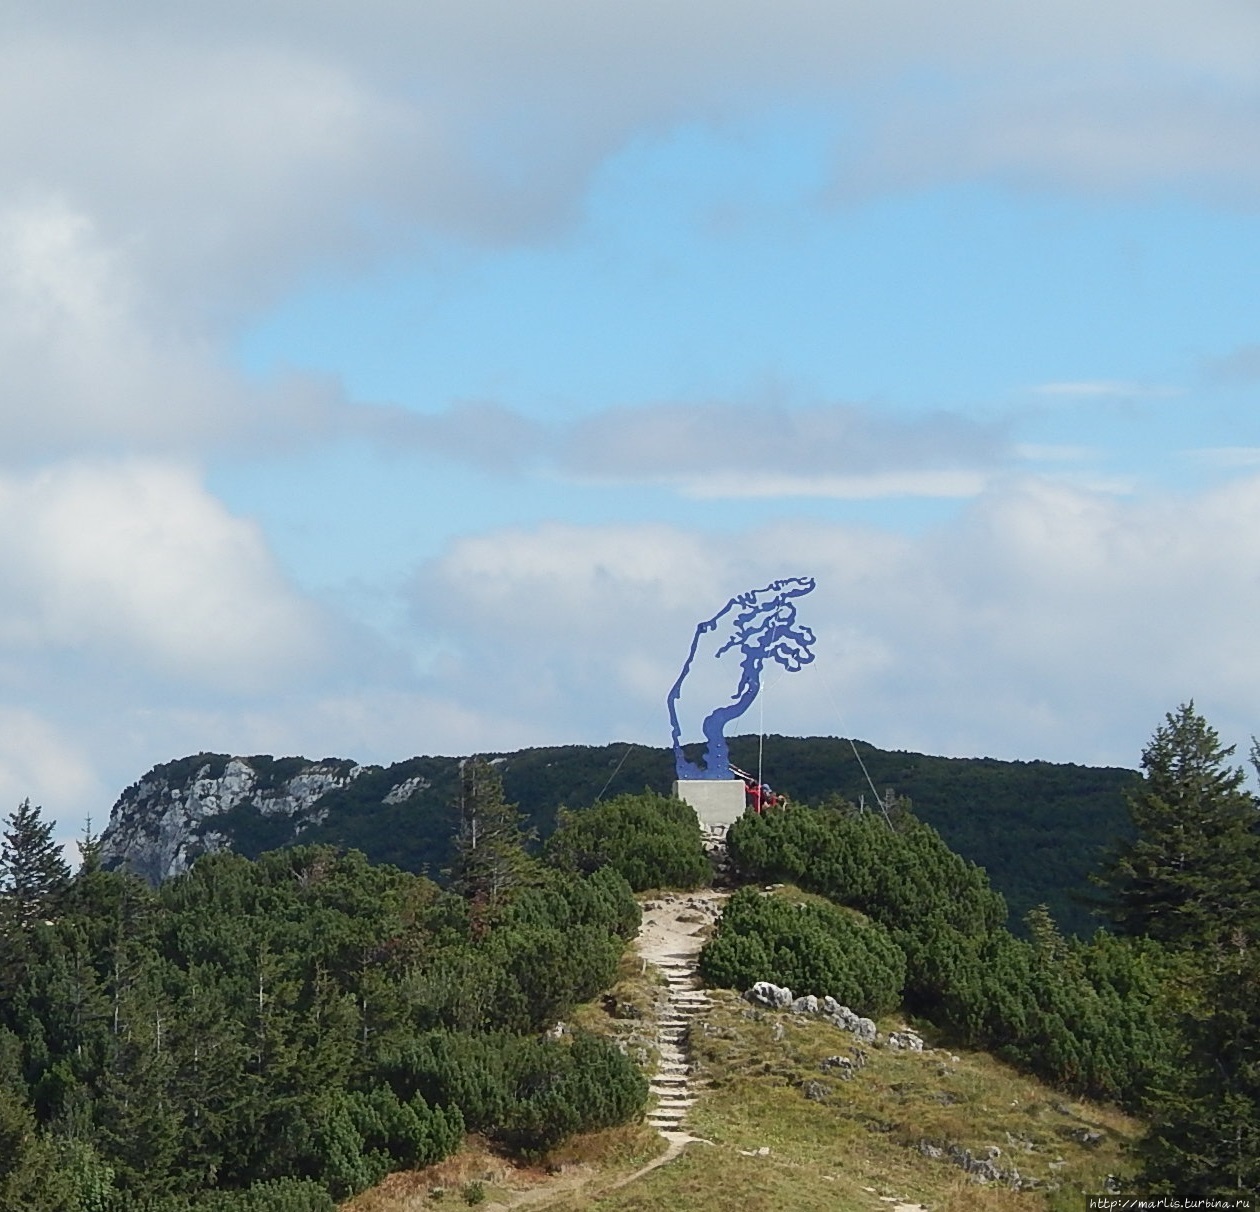 Работа современного художника Ангерера-младшего Рука Адама на горе Раушберг. 6-метровая Рука указывает на юг, в сторону Рима Рупольдинг, Германия